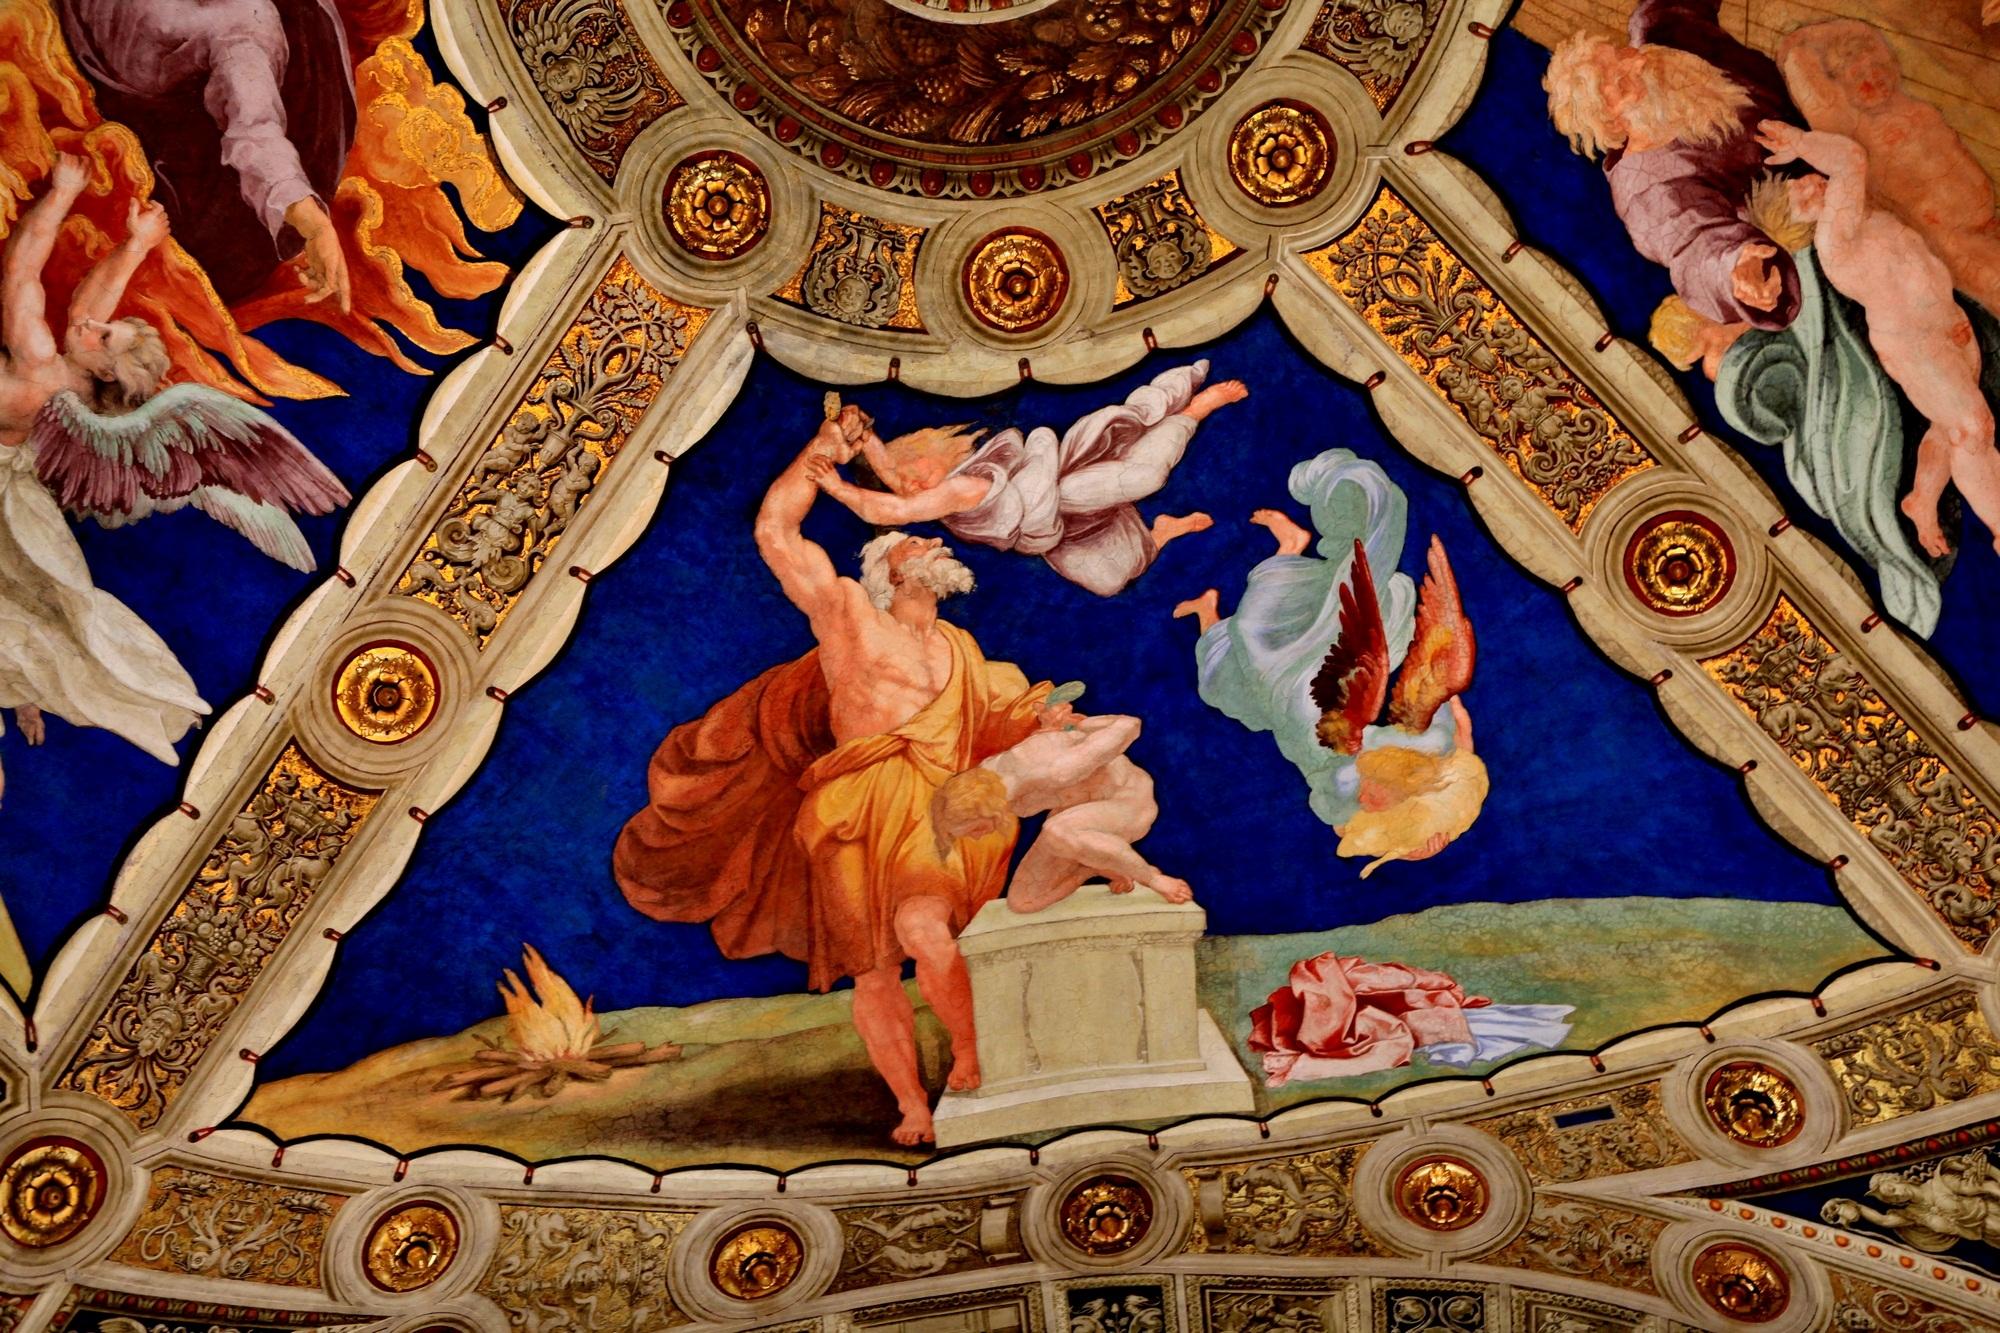 梵蒂冈博物馆(7)拉斐尔画室2 埃利奥多罗室壁画:埃利奥多罗被逐出圣殿